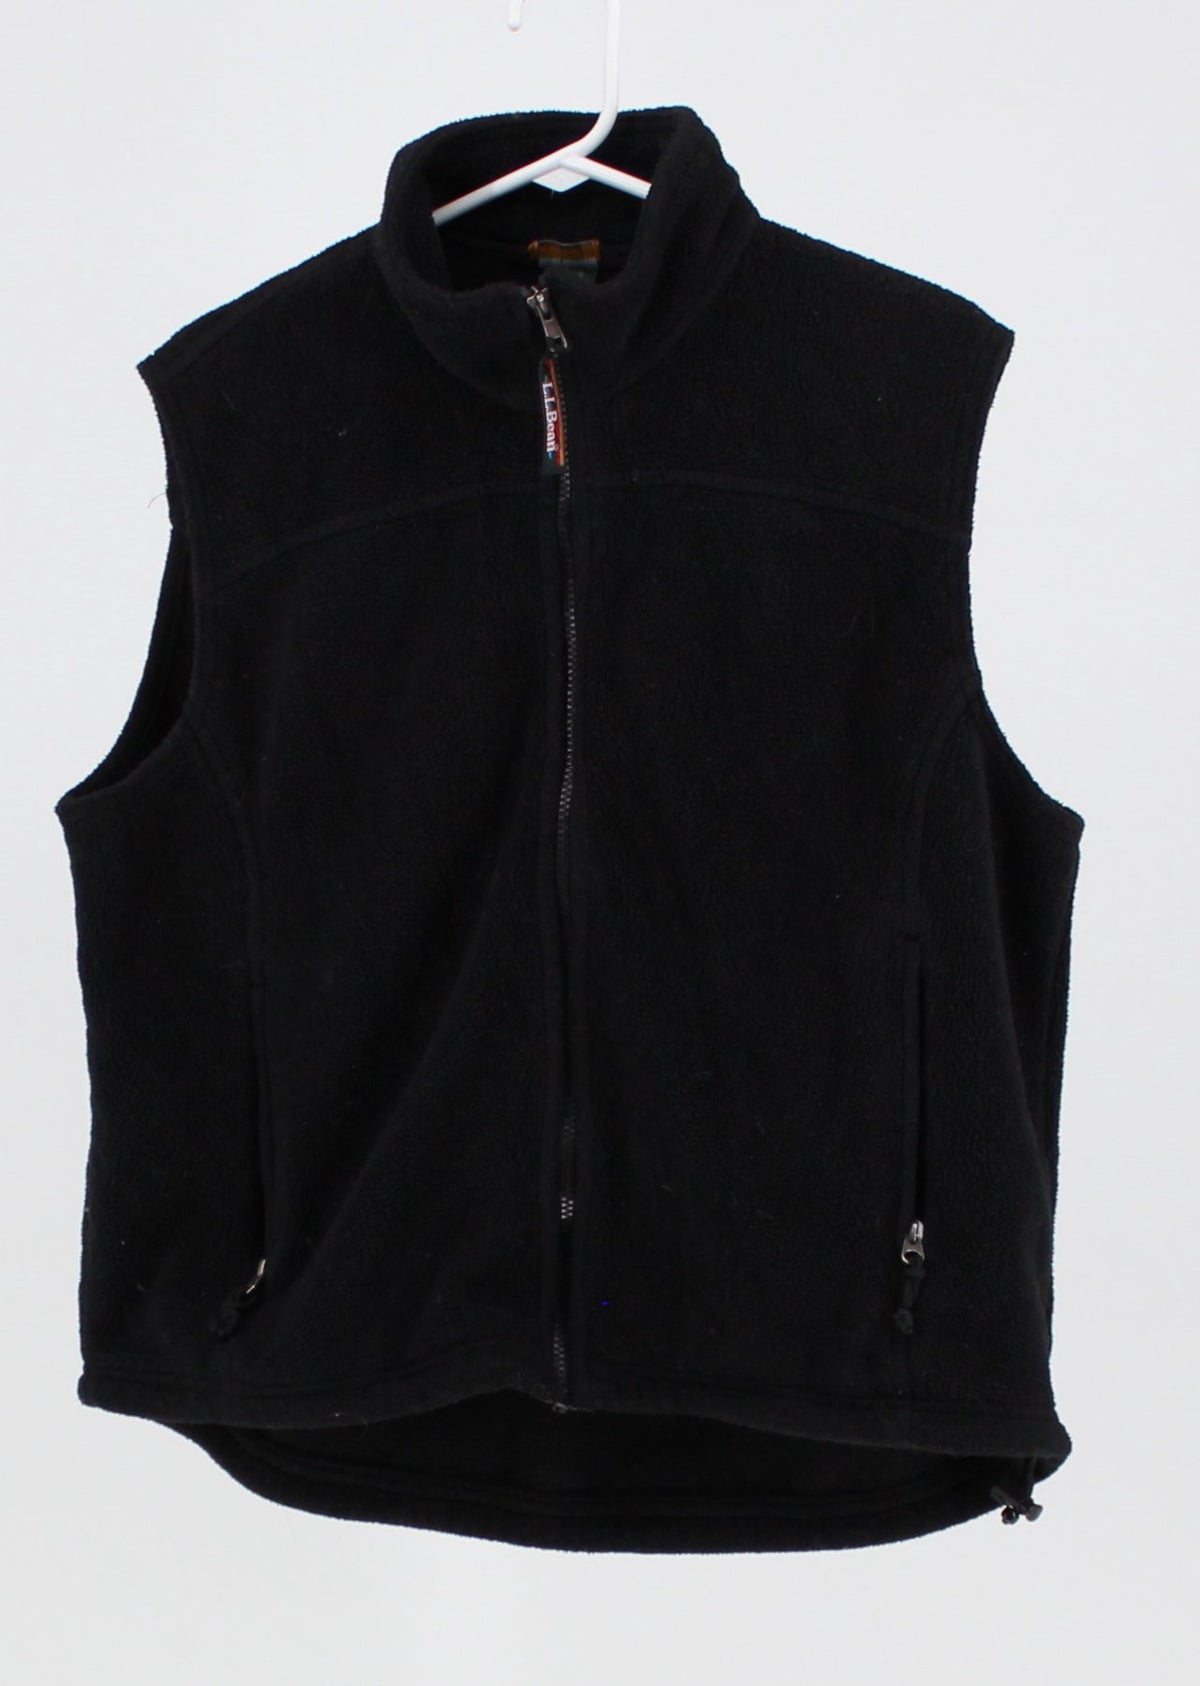 L.L.Bean Black Fleece Vest